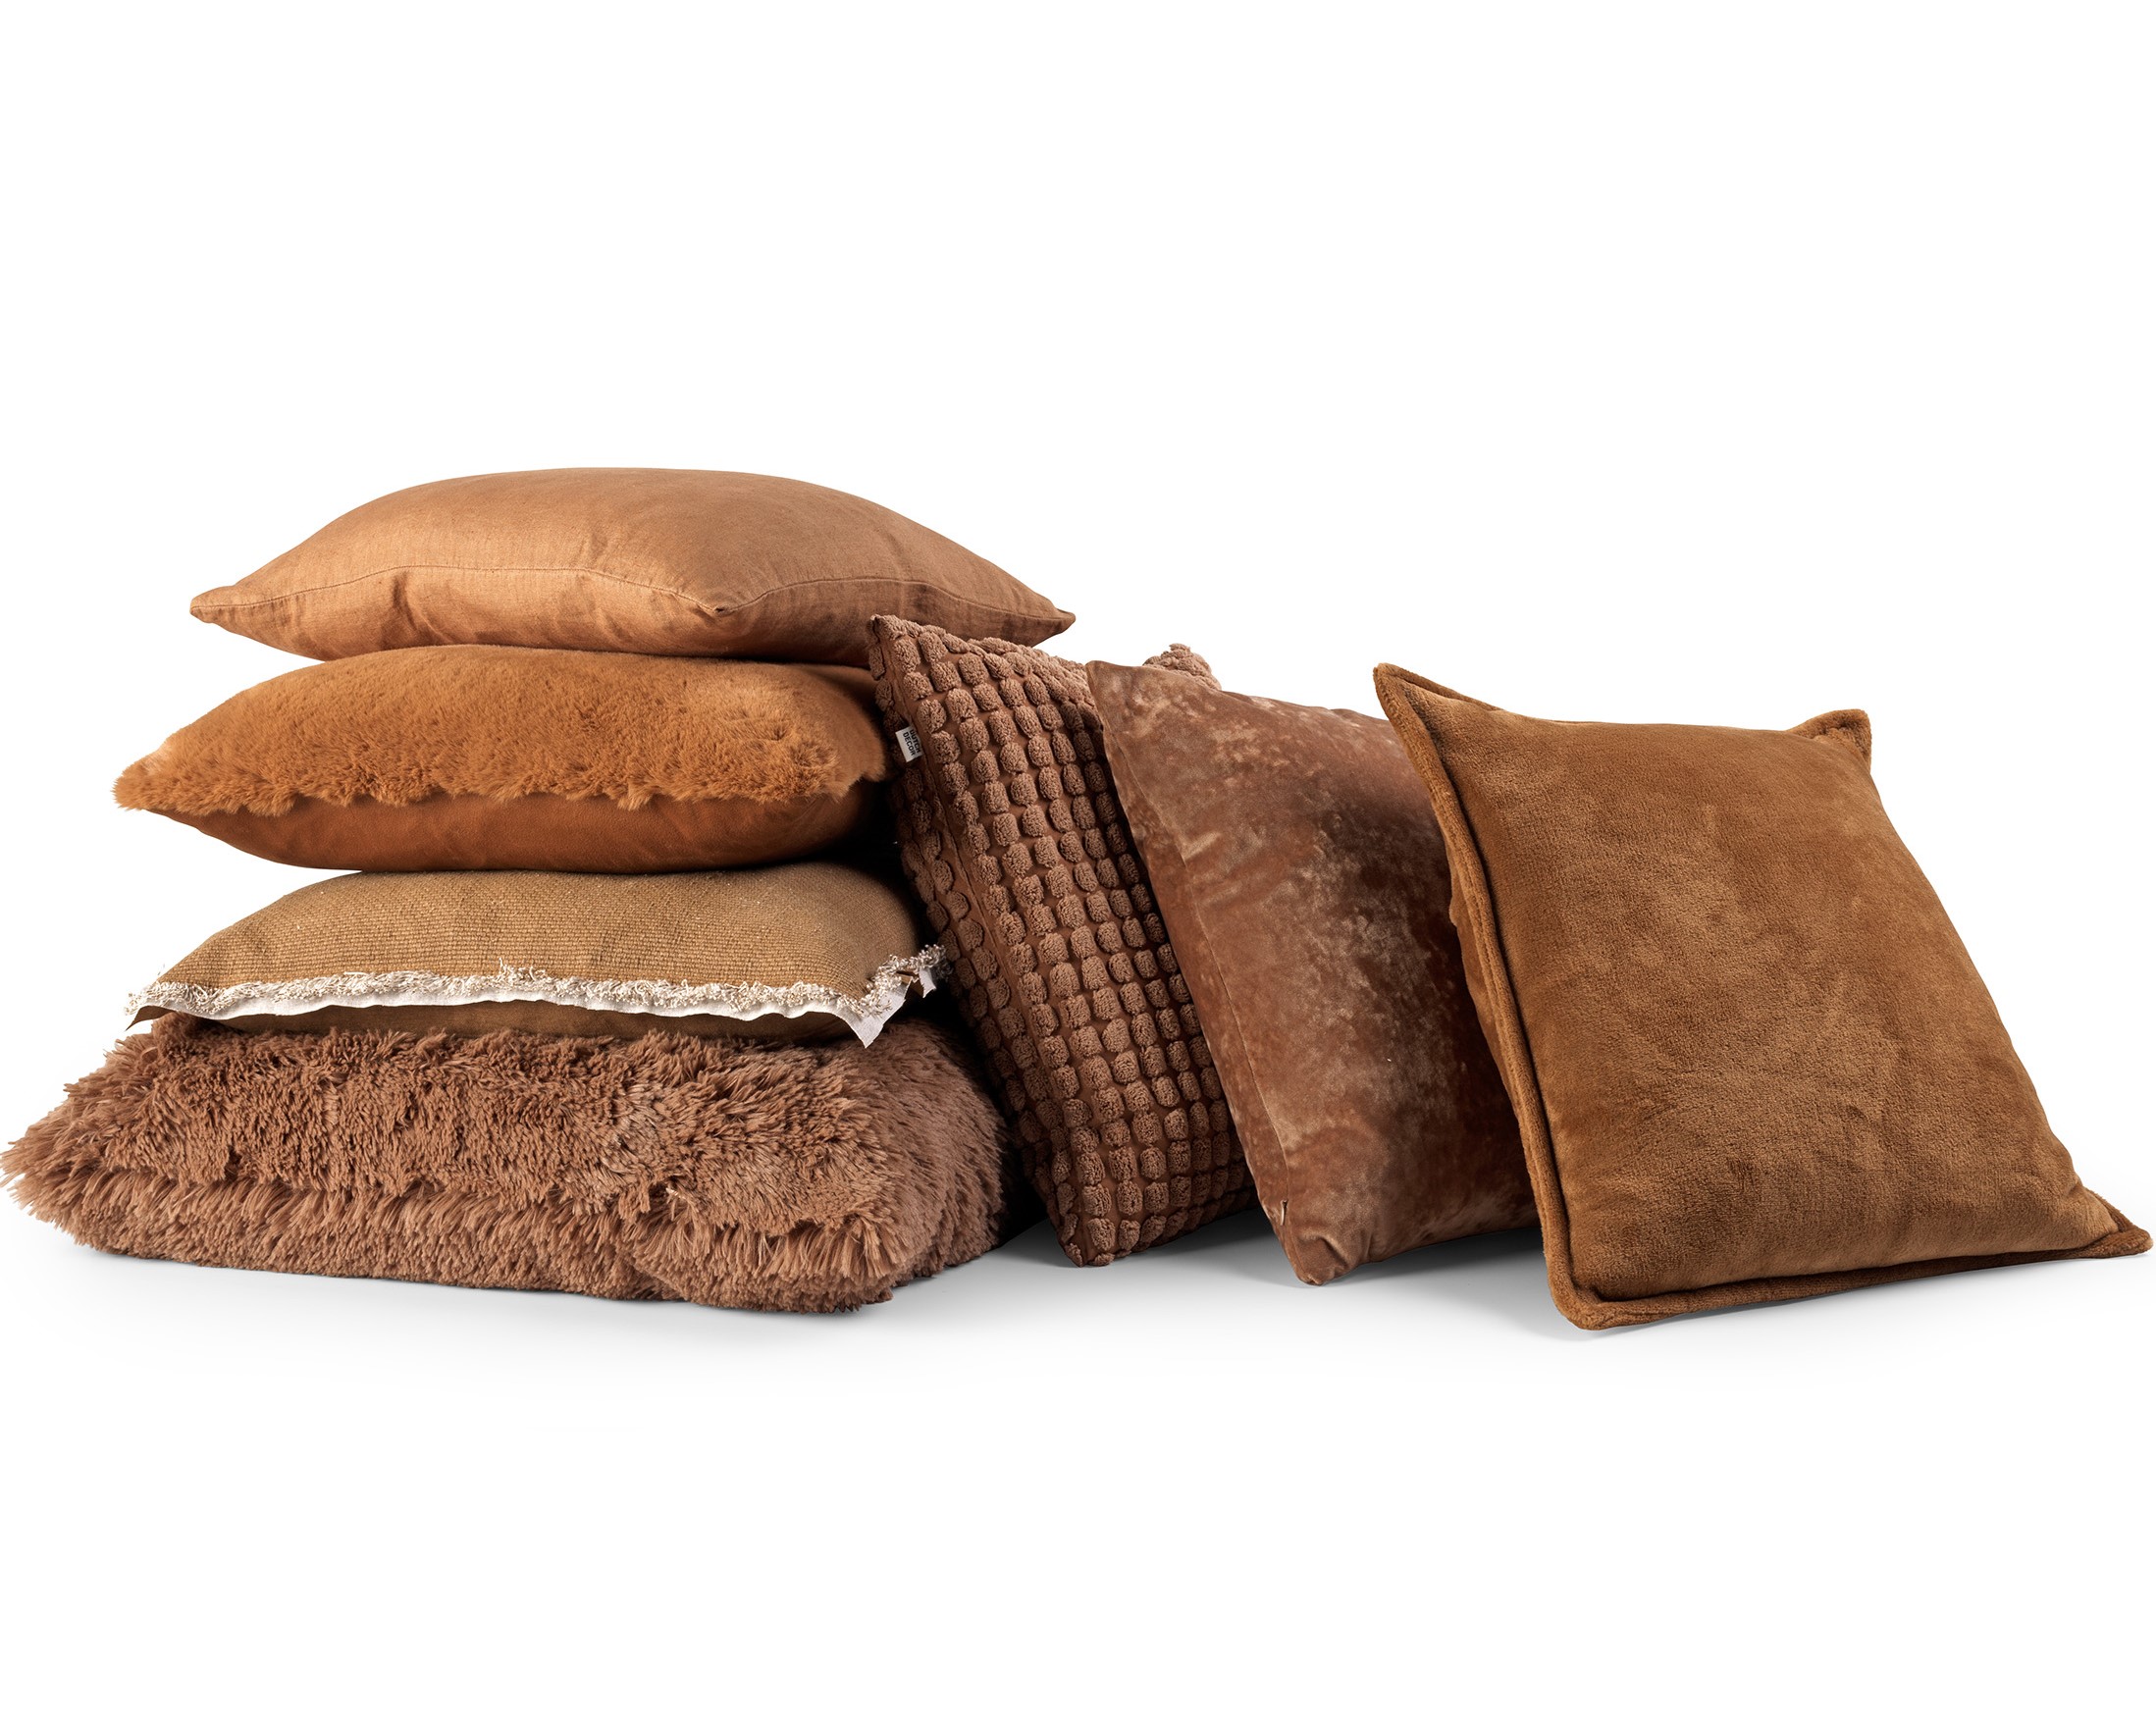 BURTO - Kussenhoes van gewassen katoen Tobacco brown 45x45 cm - bruin